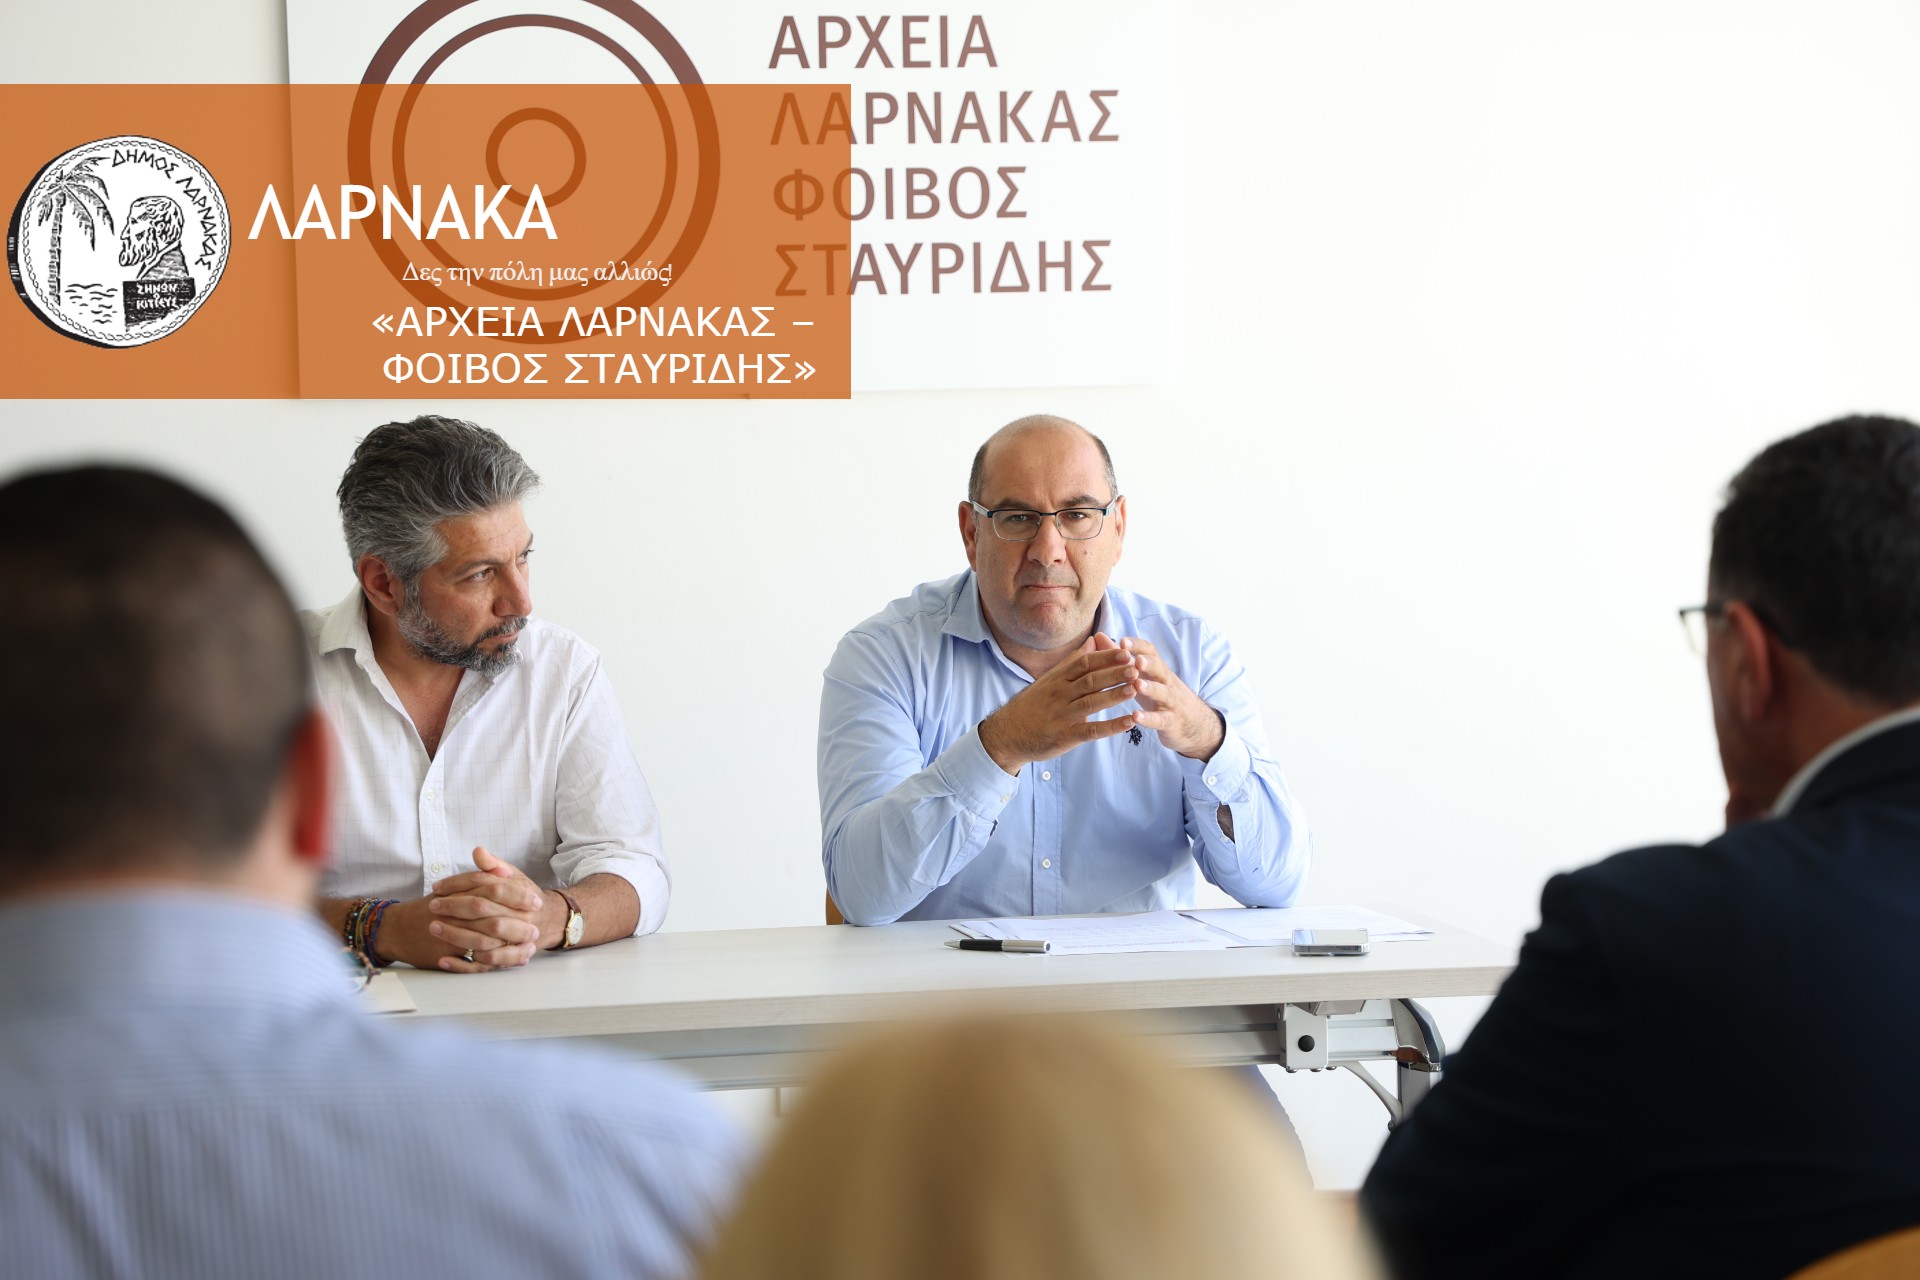 Ο Δήμος Λάρνακας ίδρυσε την εταιρεία «Αρχεία Λάρνακας – Φοίβος Σταυρίδης»